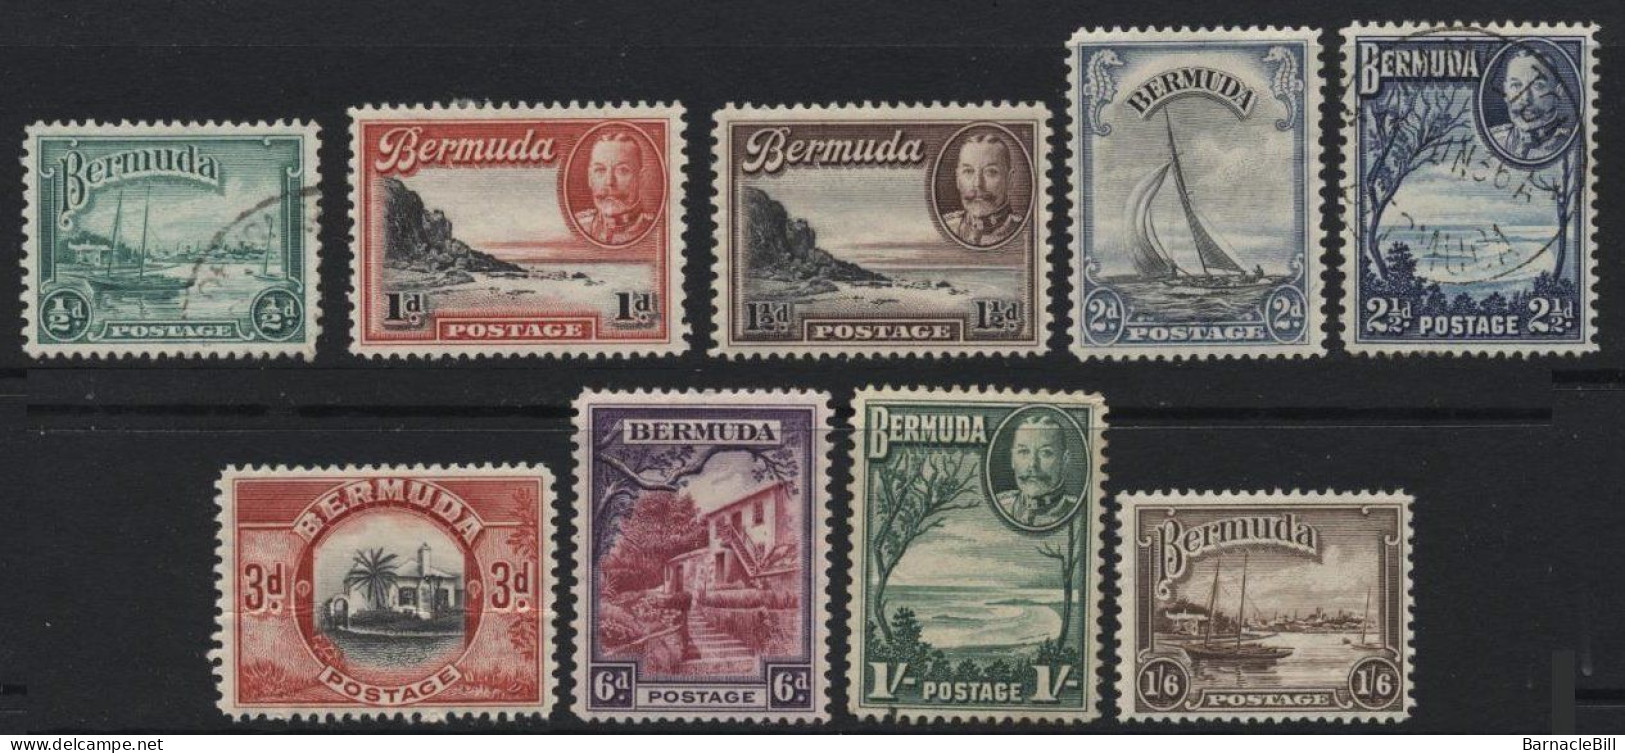 Bermuda (A28) 1936 George V Pictorial Set. Used & Unused. Hinged. - Bermuda